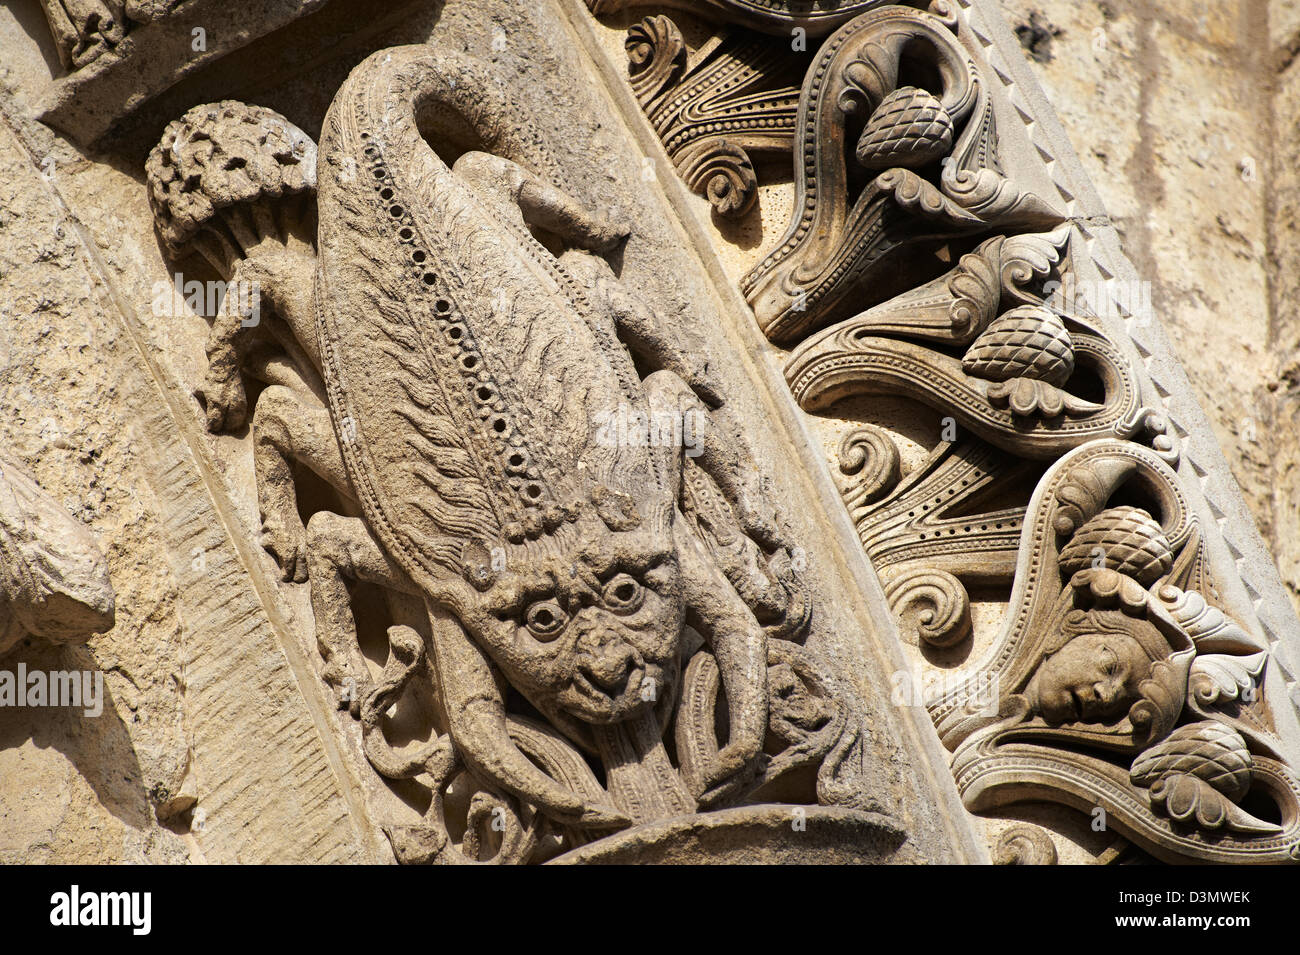 Façade Ouest, Portail gauche archivoltes c. 1145. Cathédrale de Chartres, en France. Sculpture gothique Scorpion le signe du zodiaque, Banque D'Images